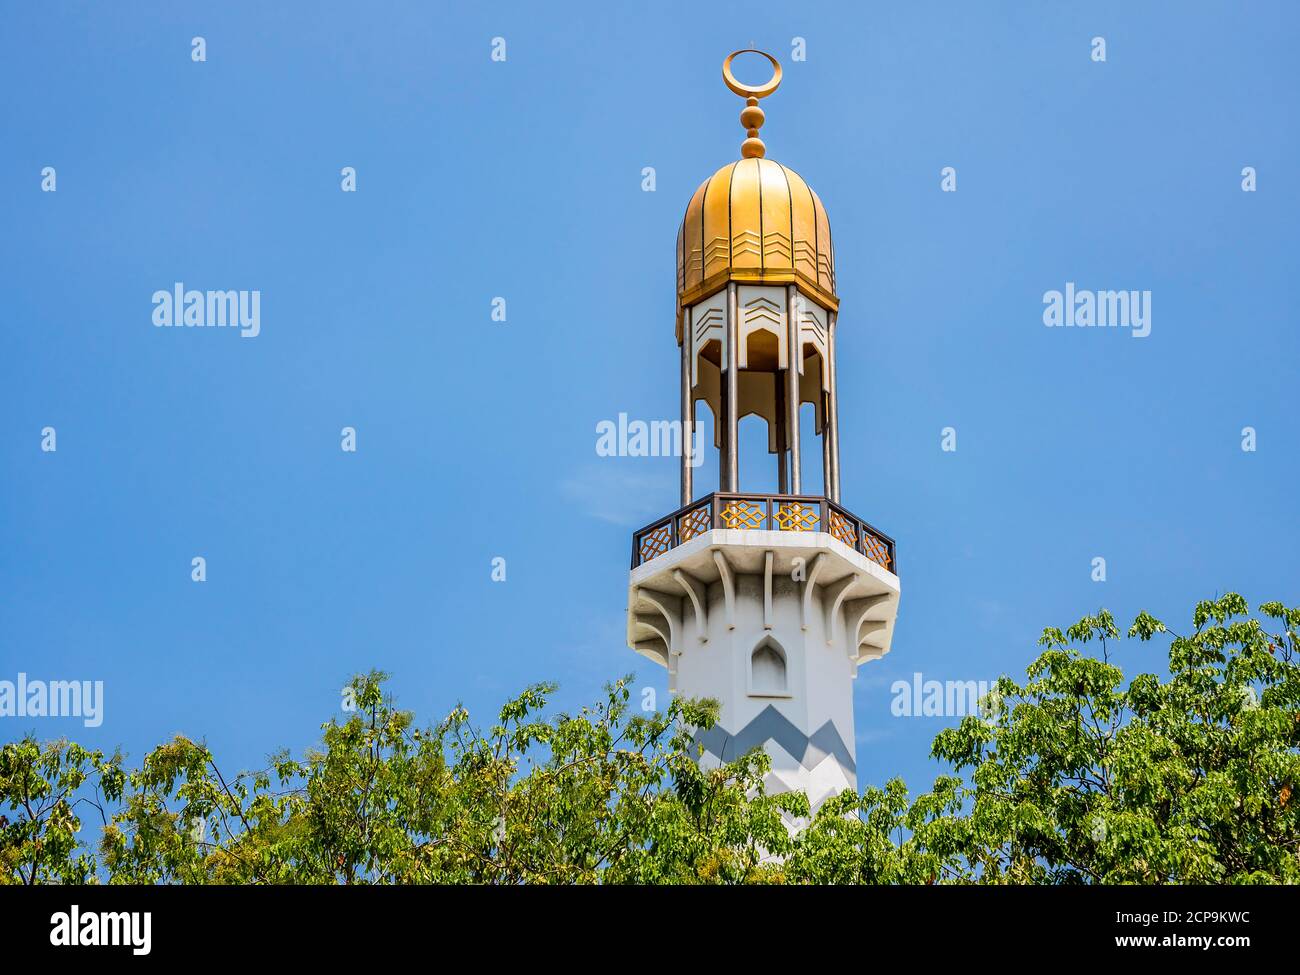 Le minaret du Centre de la religion islamique à Malé, République des Maldives Banque D'Images